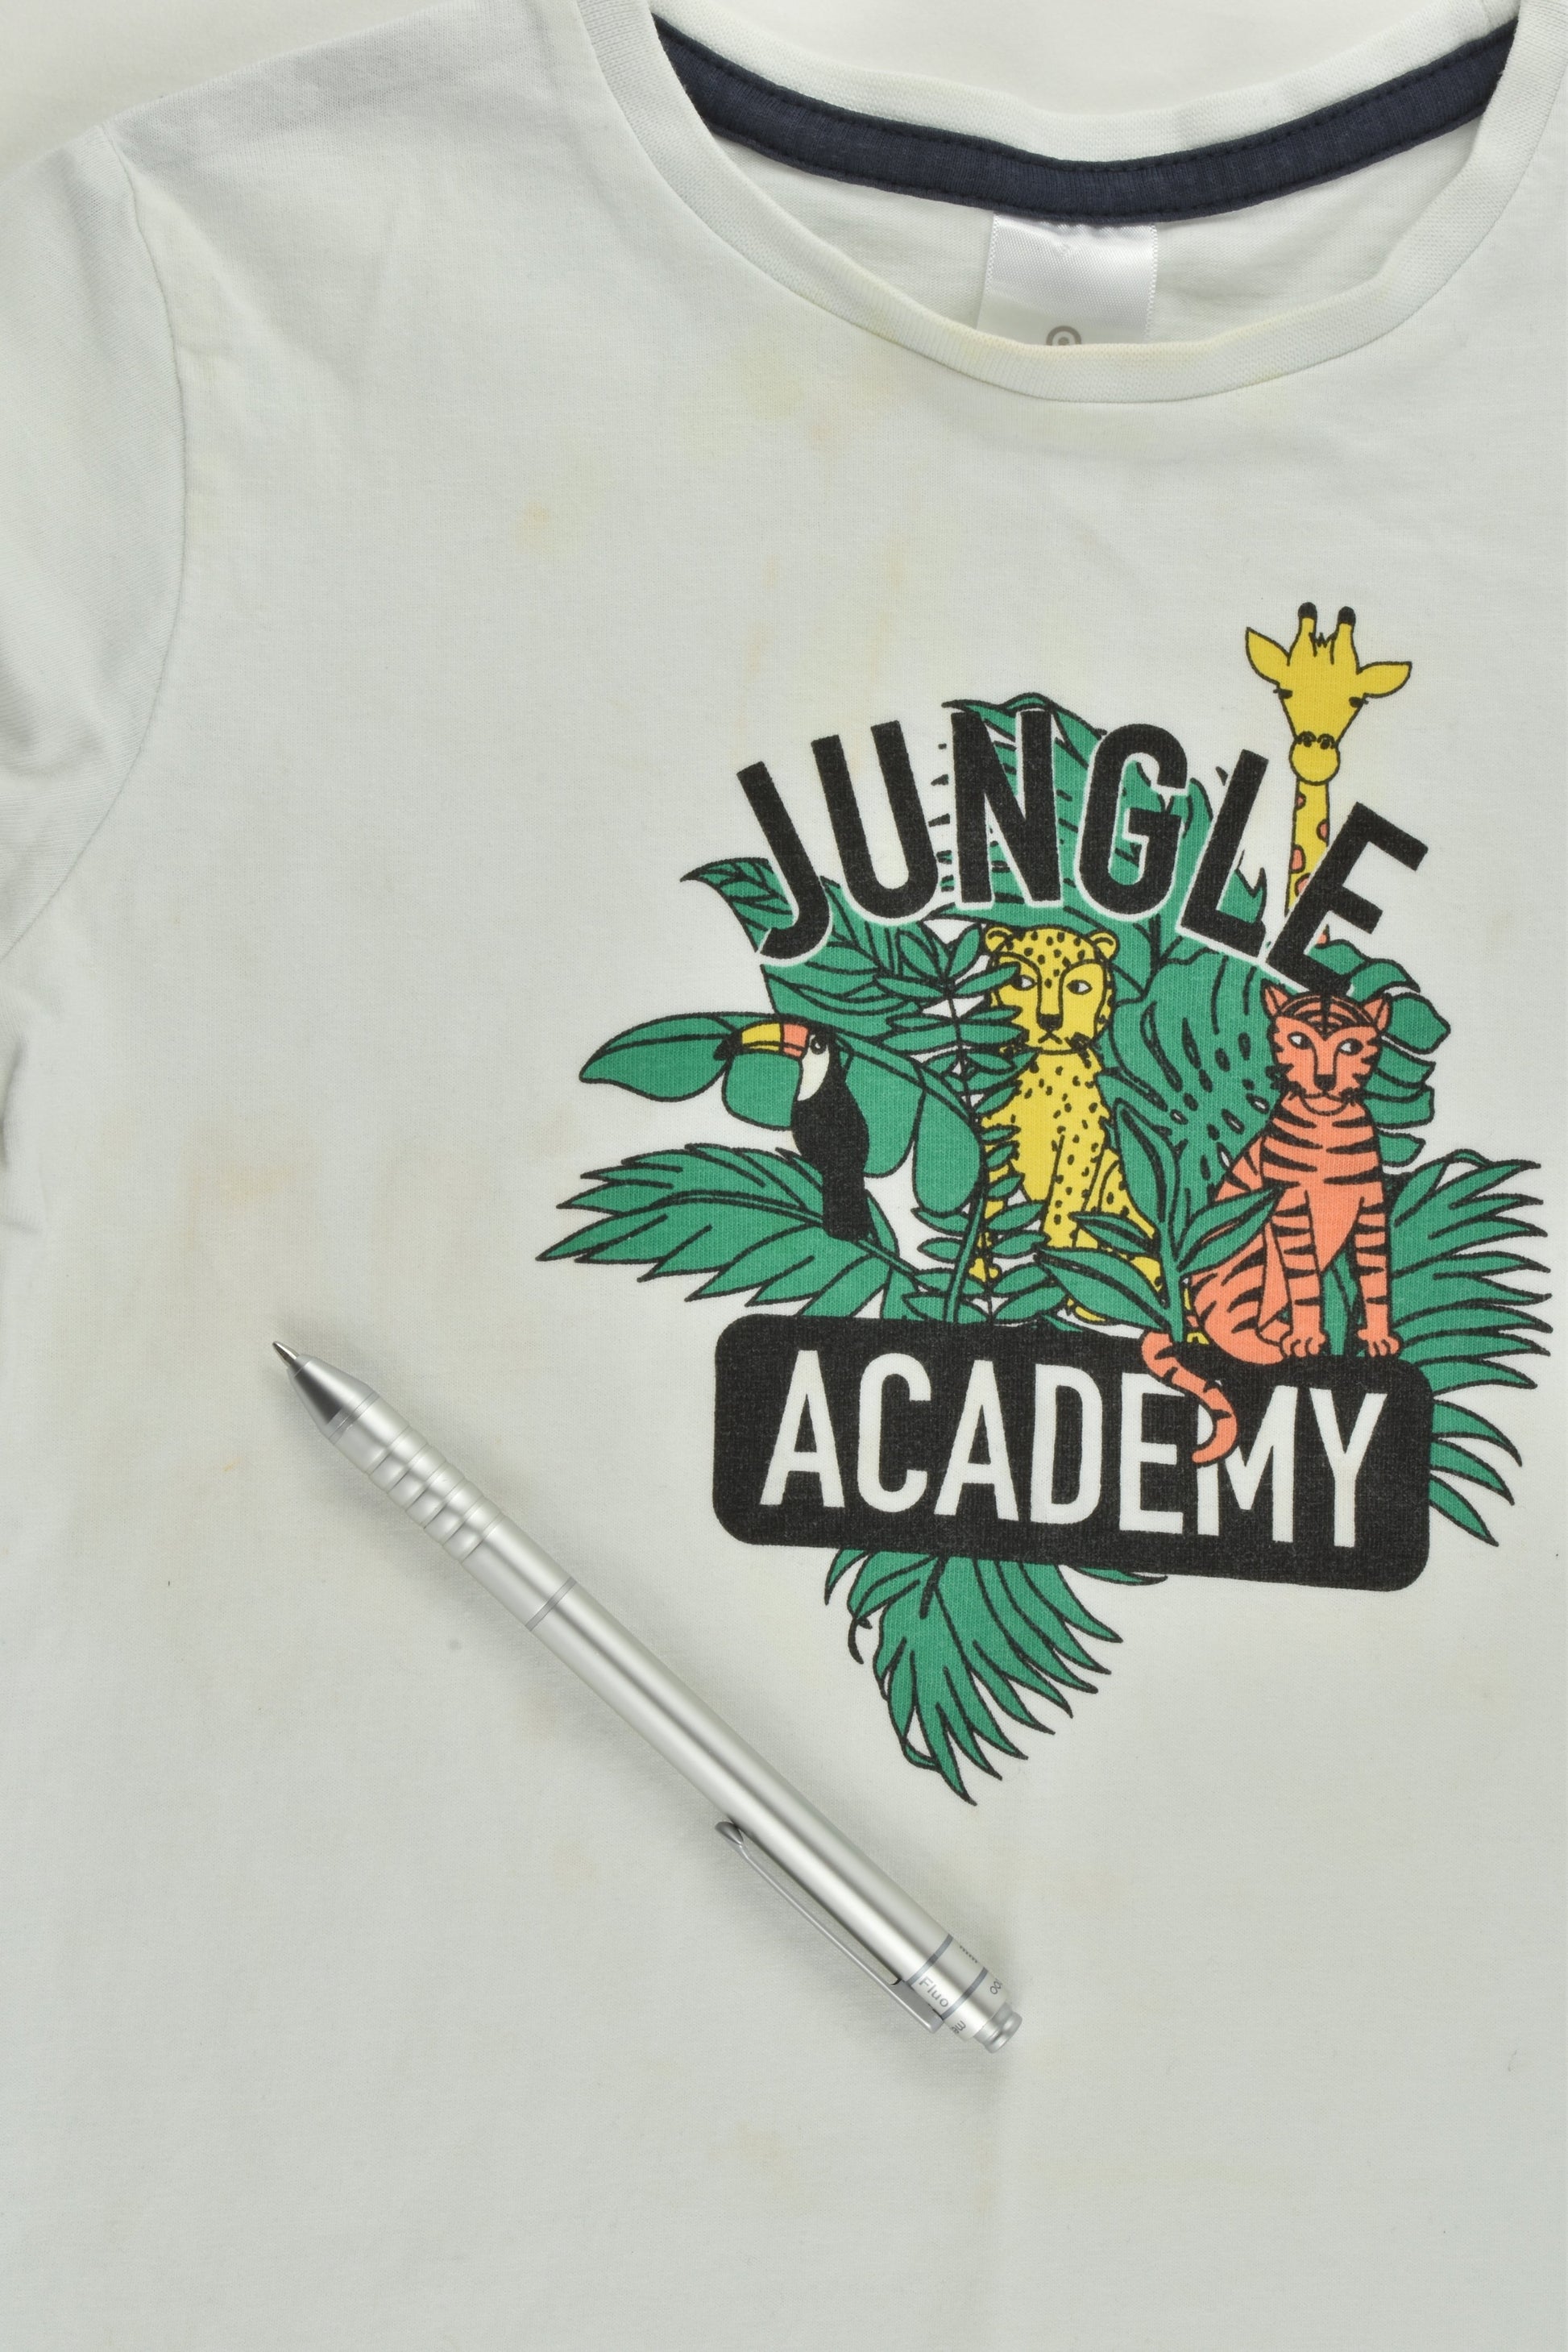 Target Size 3 'Jungle Academy' T-shirt